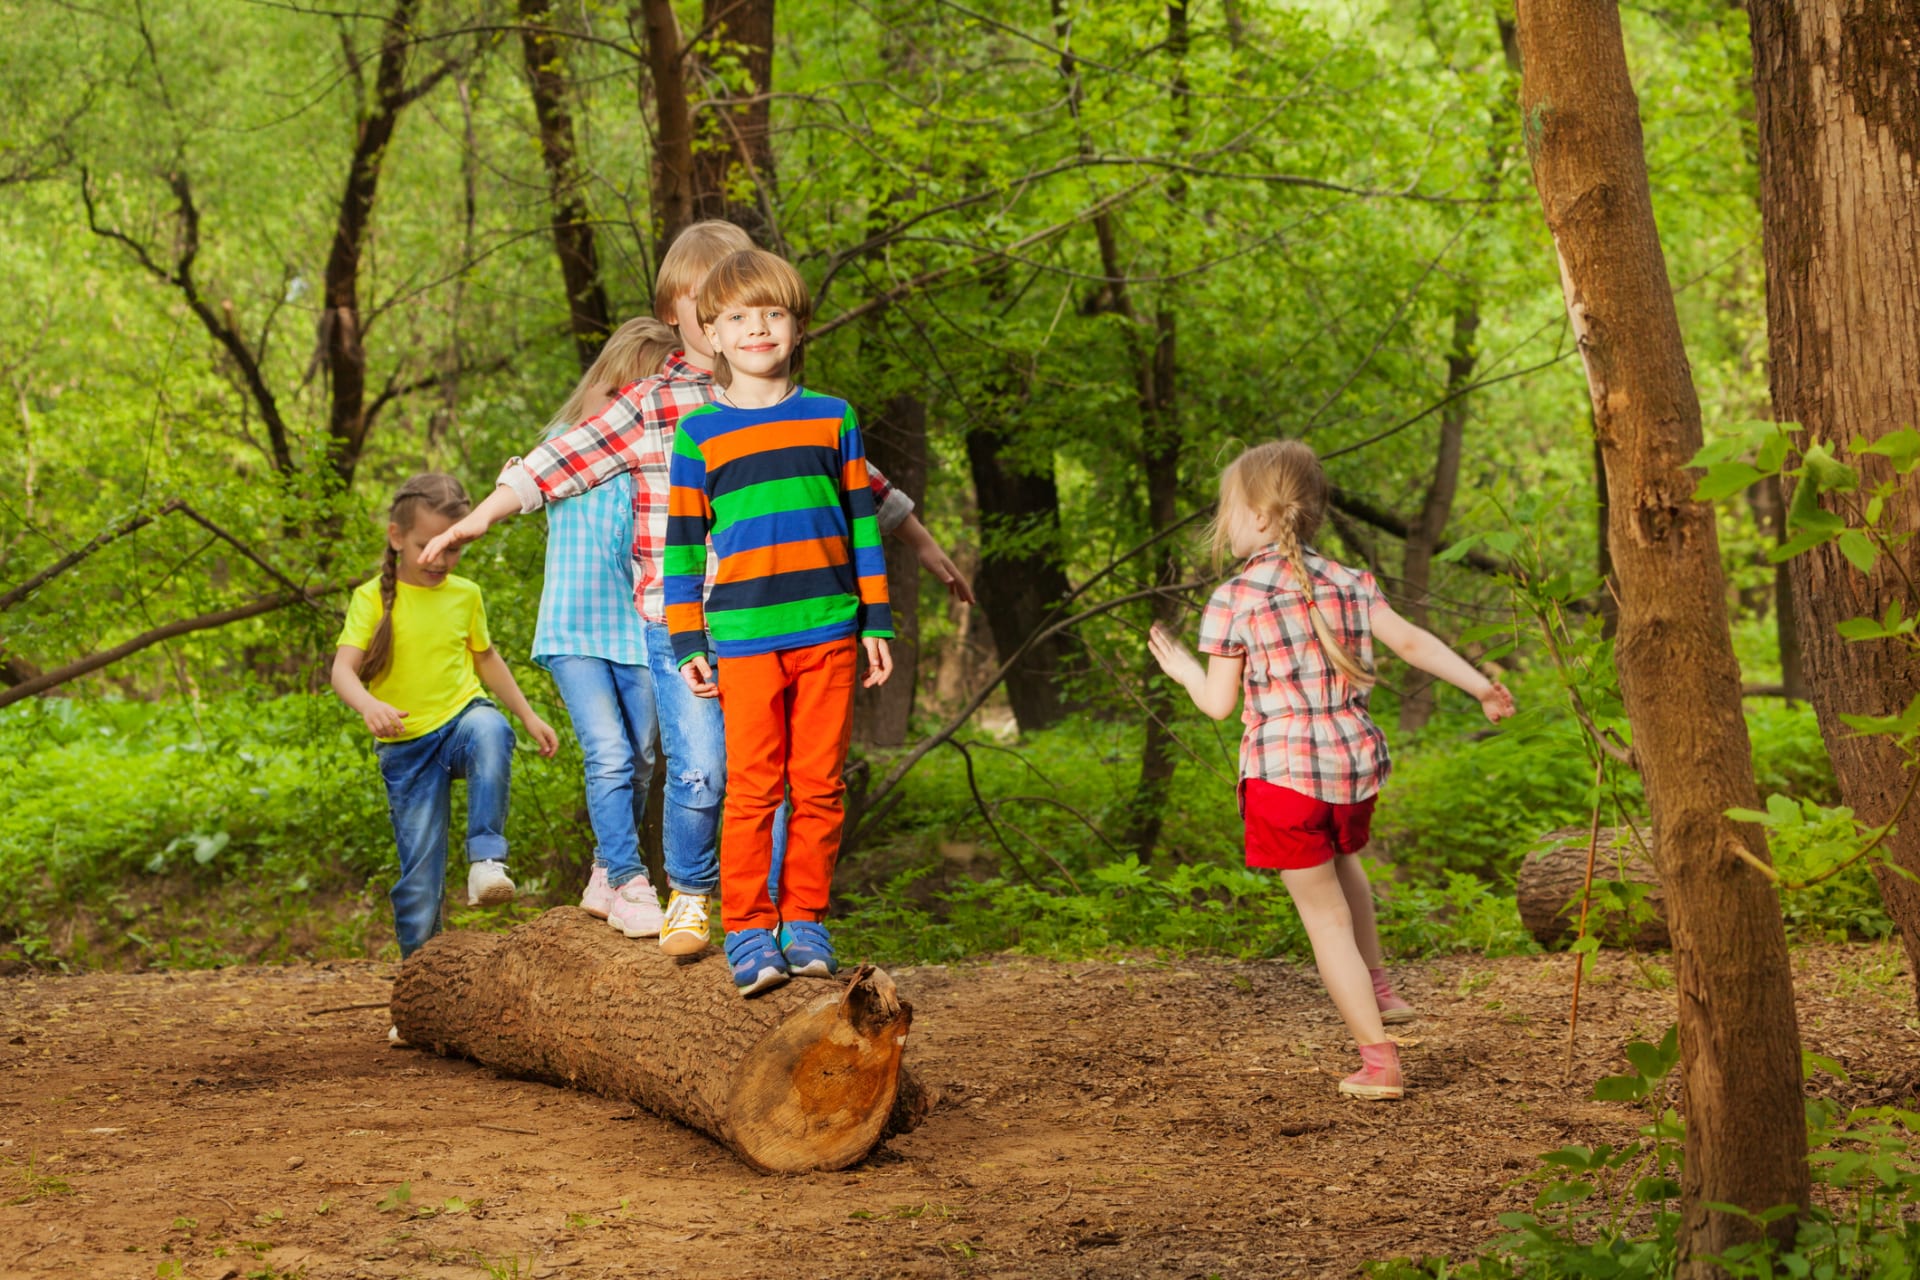 I kláda v lese bude pro děti skvělá zábava